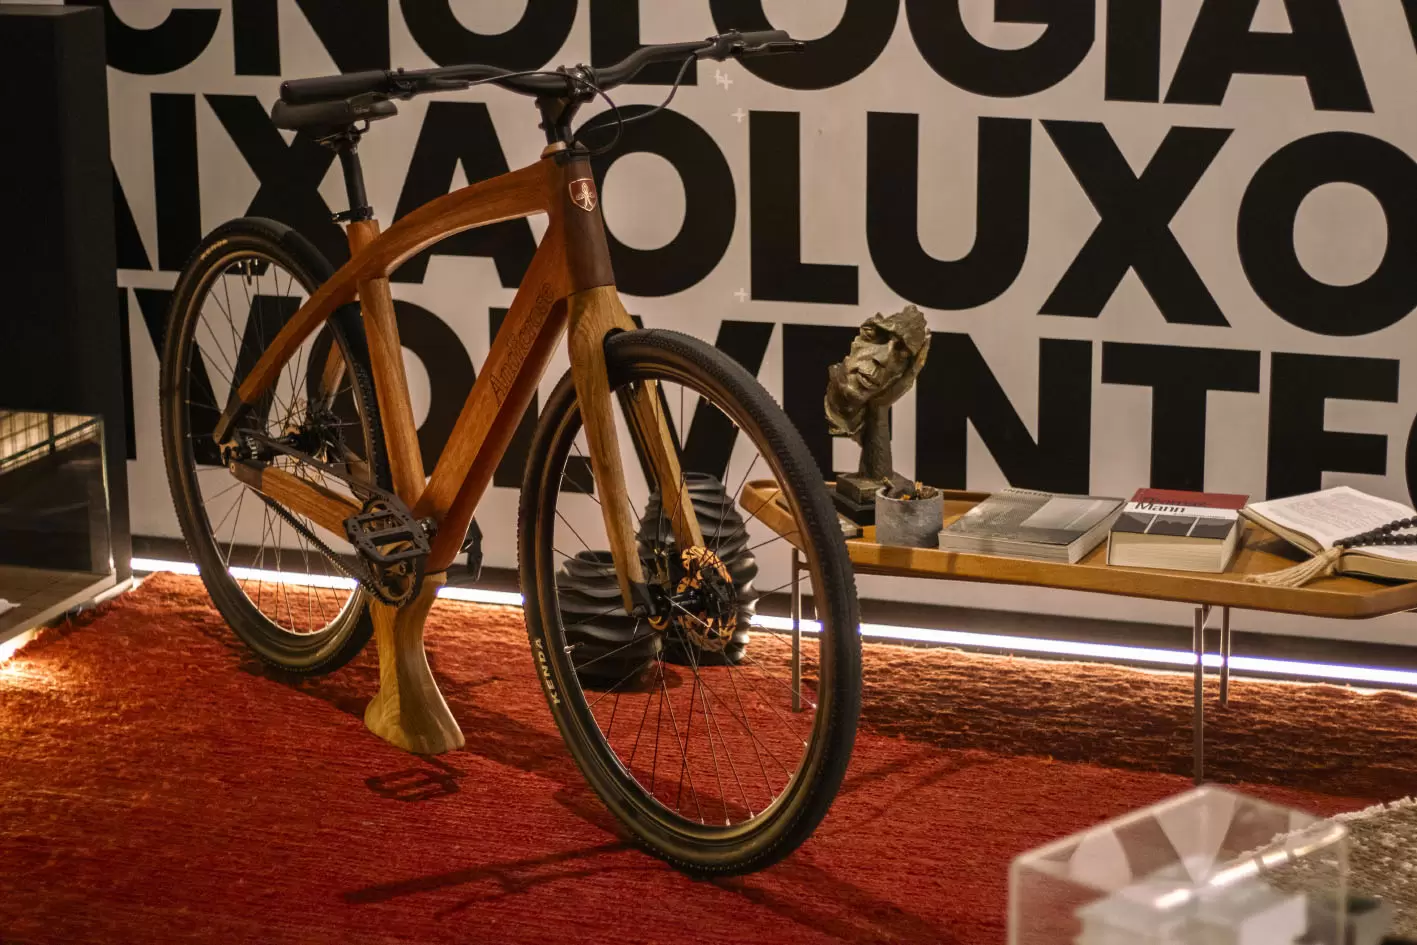 Andicrose Wooden Bikes eleva a experiência com suas bicicletas que combinam funcionalidade excepcional com um design primoroso